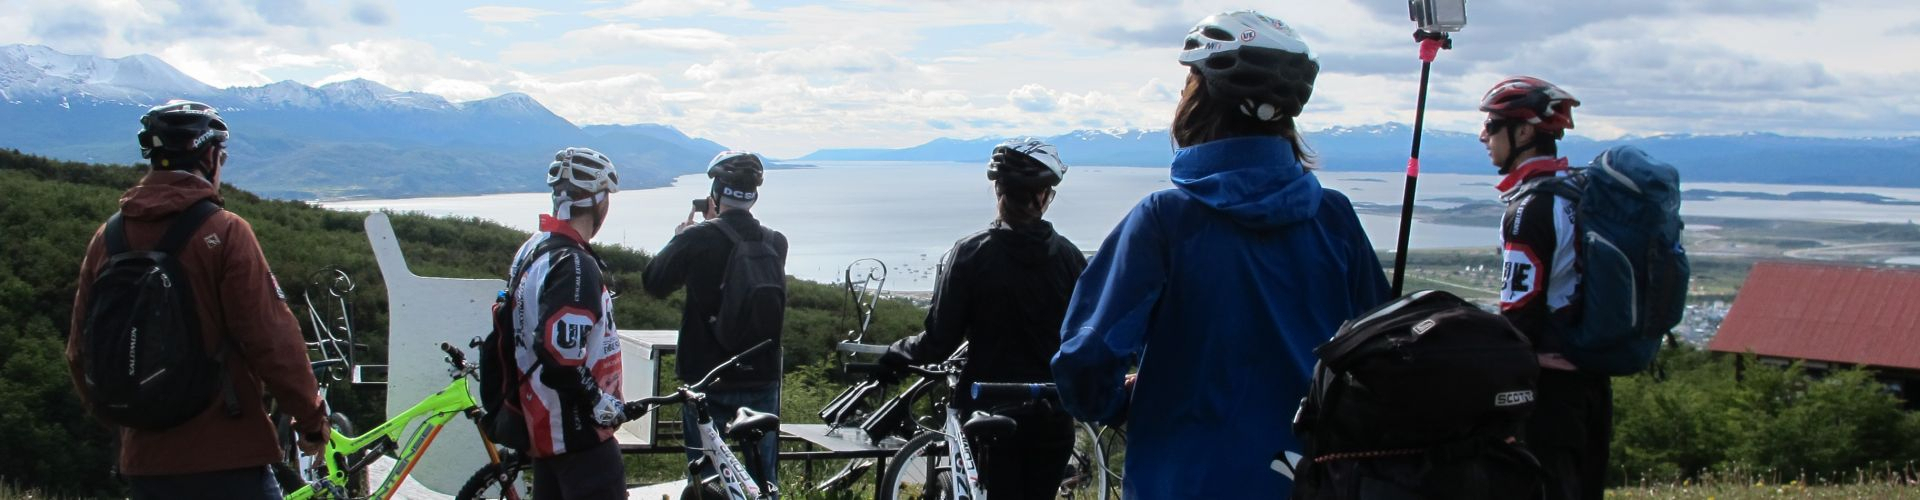 La vista de uno de nuestros bike tours, camino al Glaciar Martial.